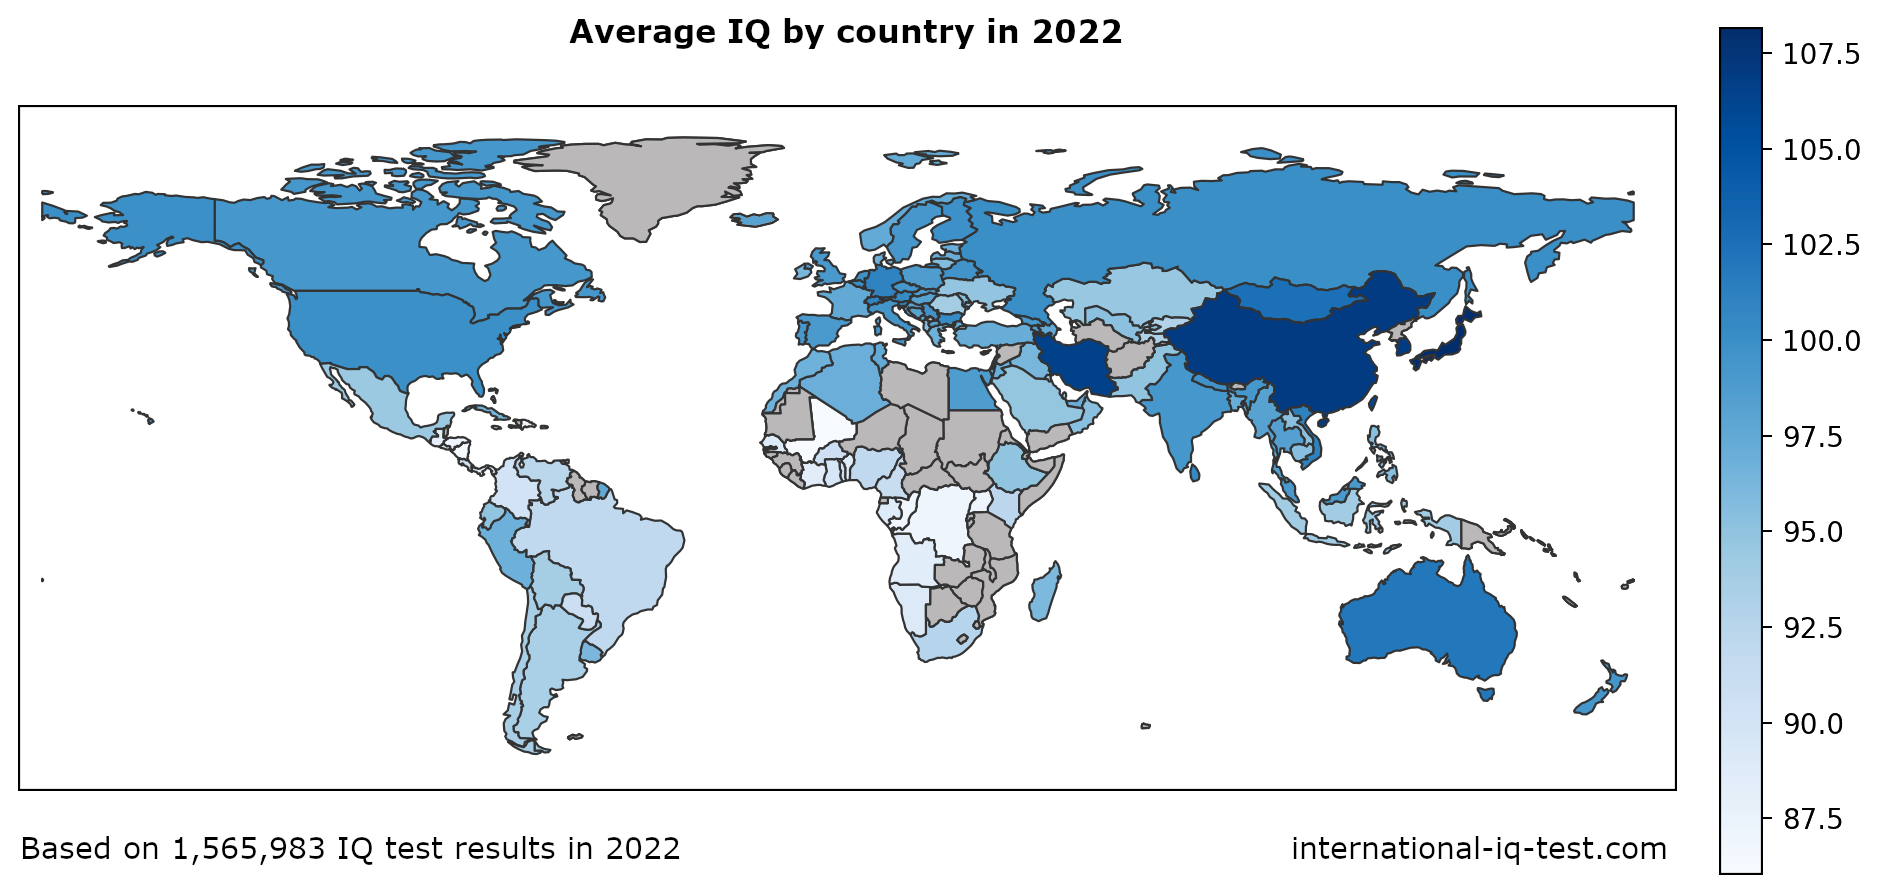 Svjetska karta koja prikazuje prosječni IQ po zemlji 2022. koristeći nijanse plave od najlakšeg do najmračnijih